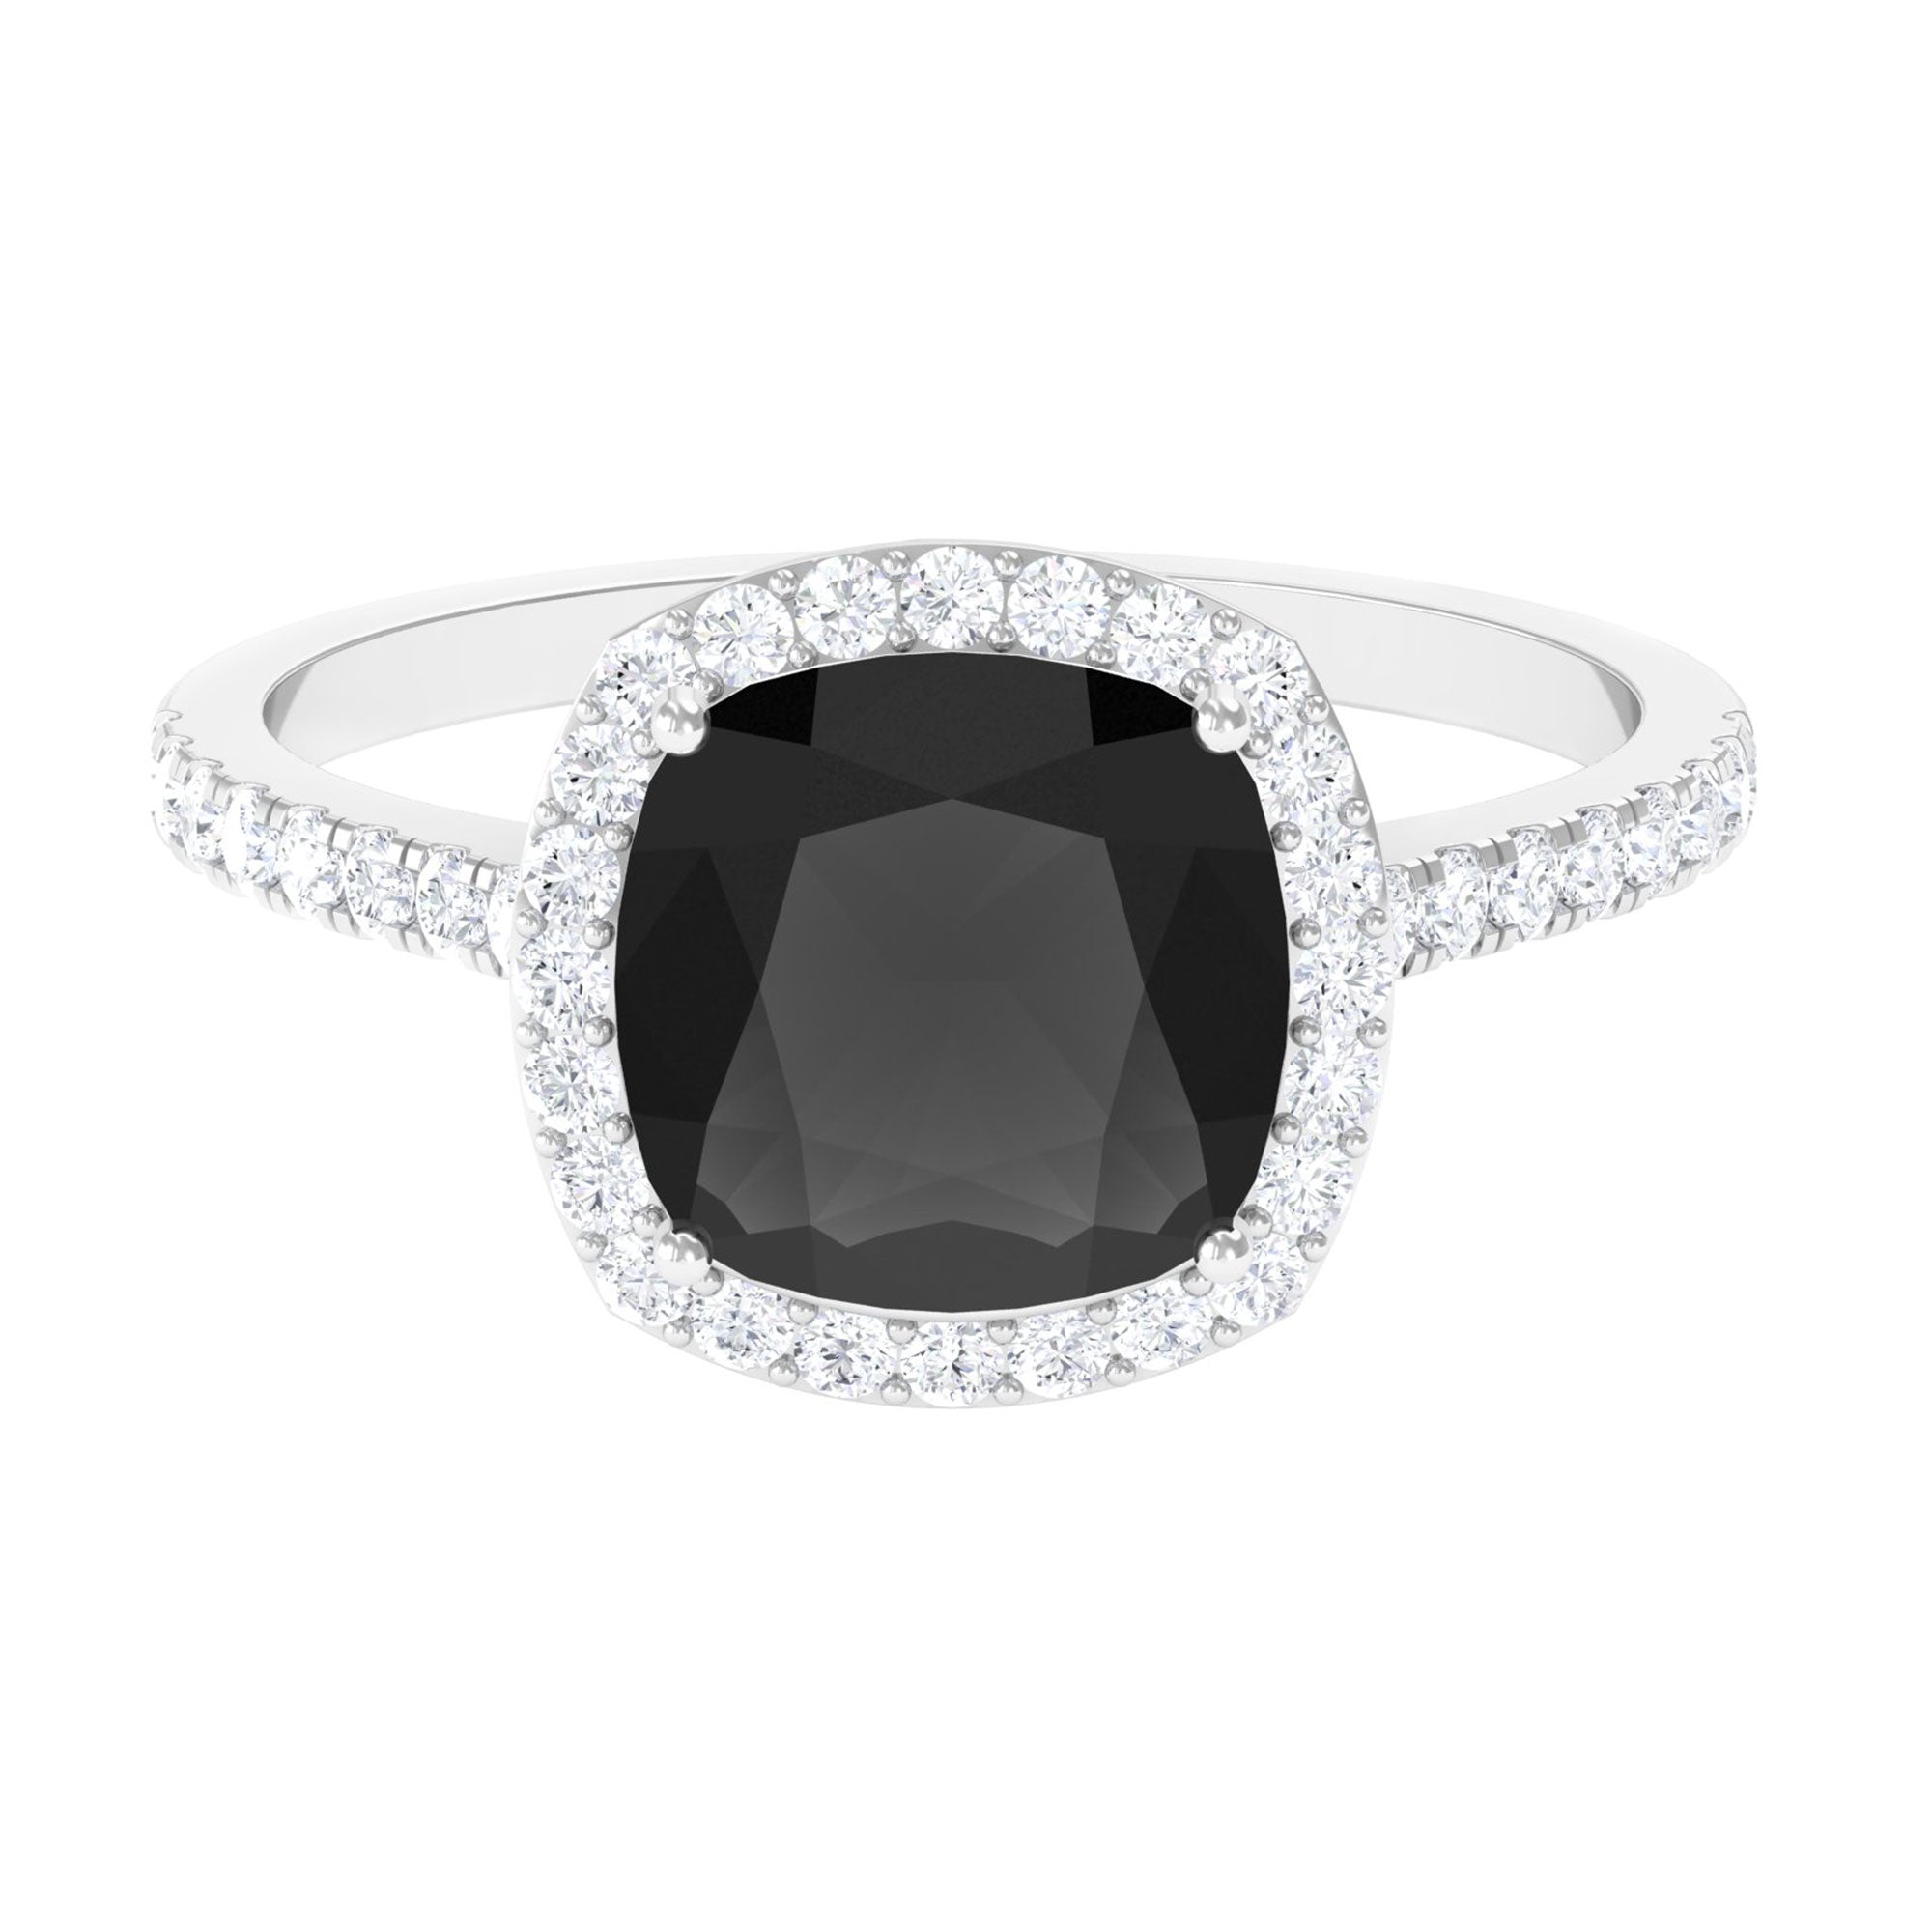 Vintage Inspired Lab Created Black Diamond Engagement Ring with Diamond Lab Created Black Diamond - ( AAAA ) - Quality - Rosec Jewels